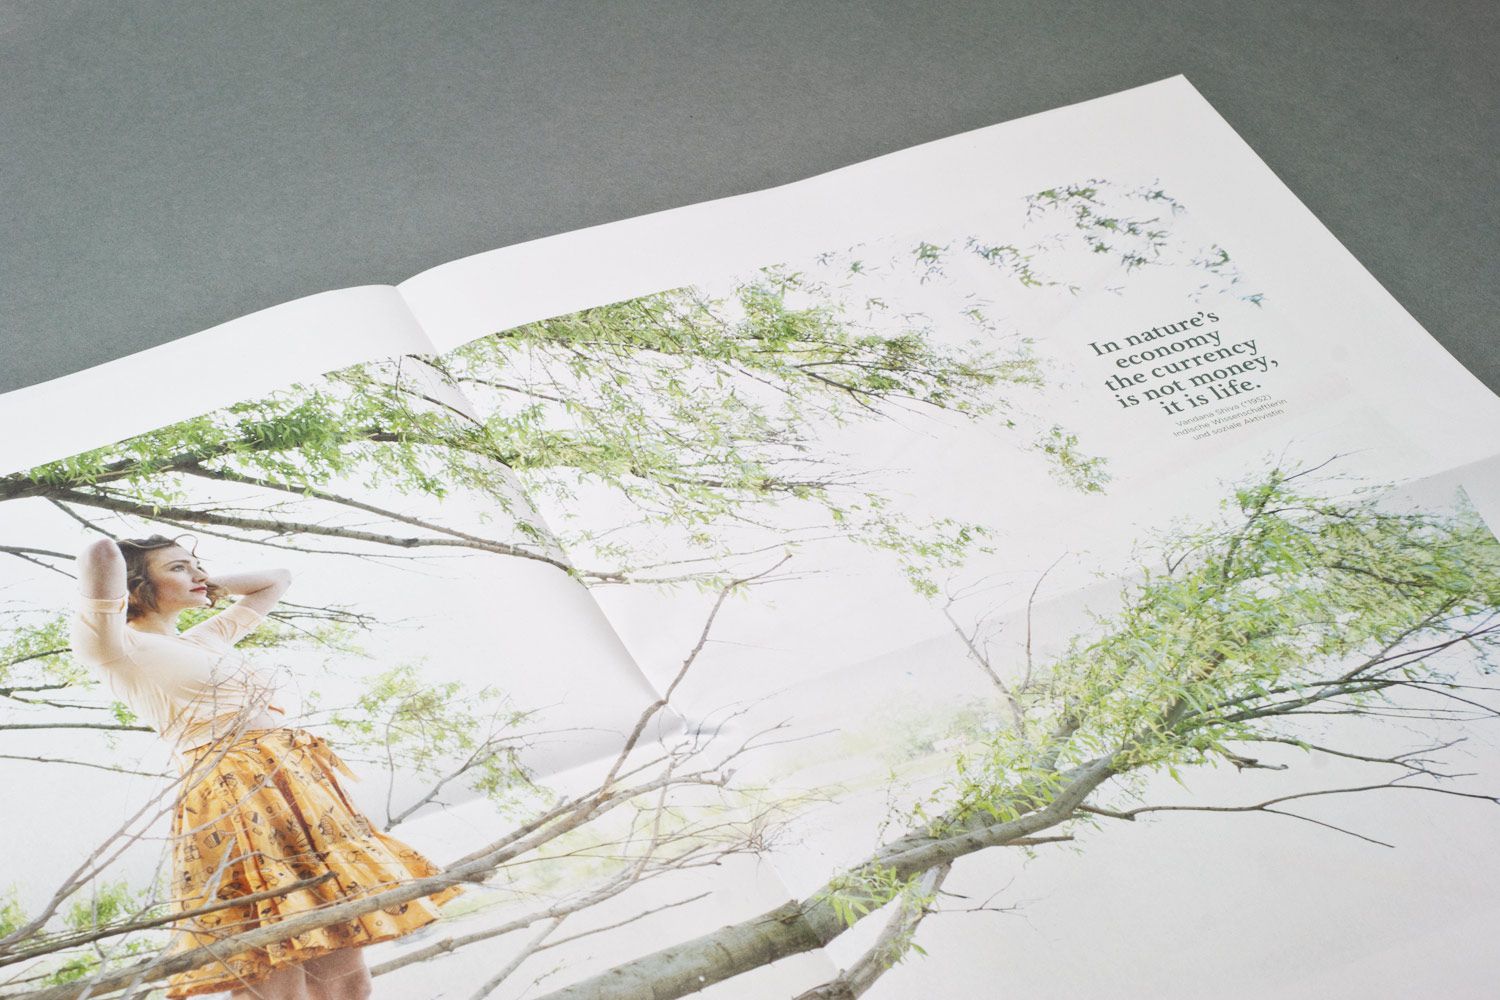 Anukoo Lookbooks Detail Nature